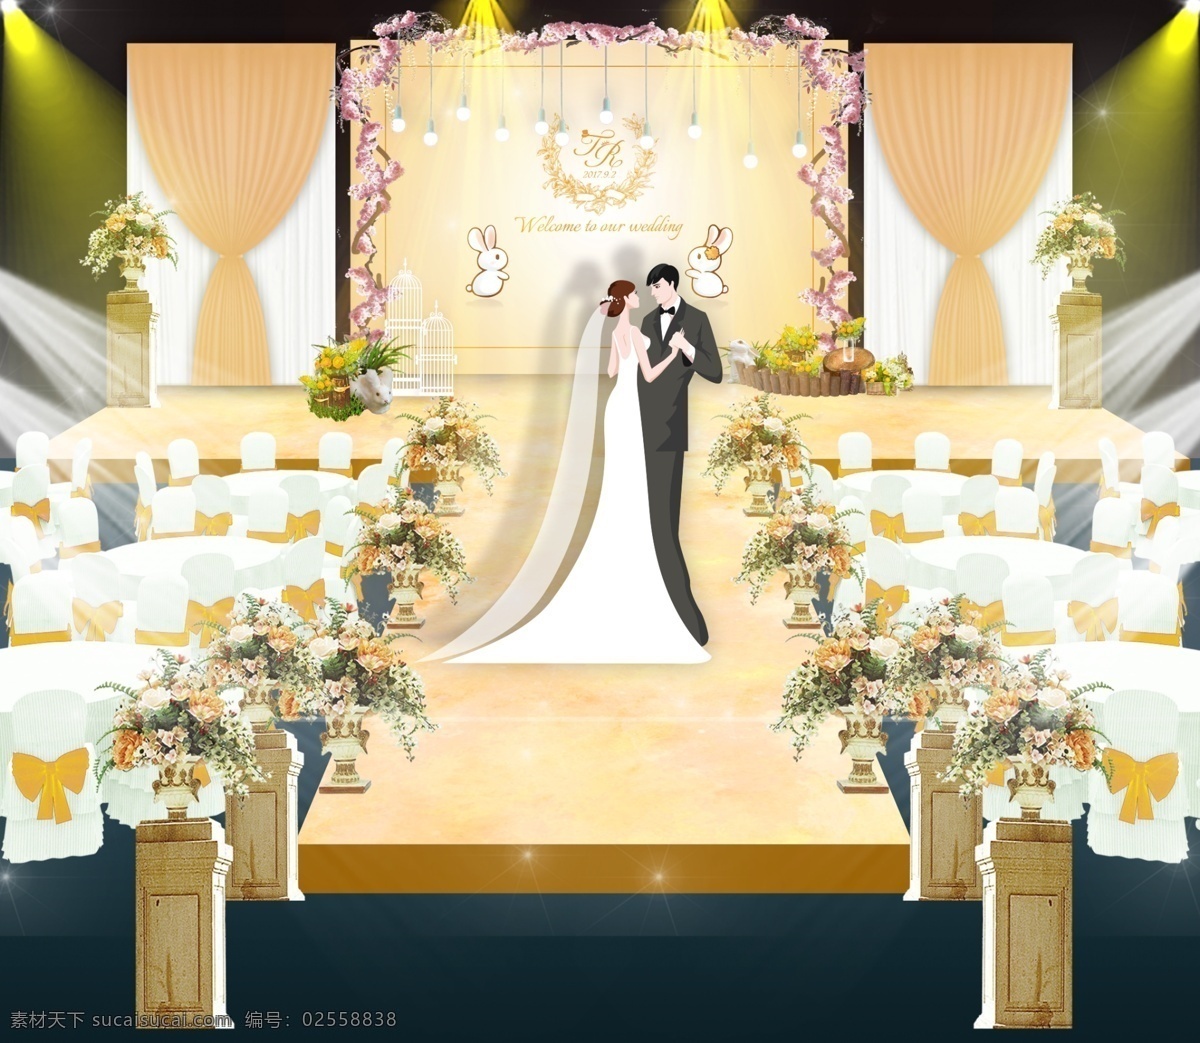 婚礼 舞台 背景 布置 婚庆 枇杷色 路引 新人 星空 灯光